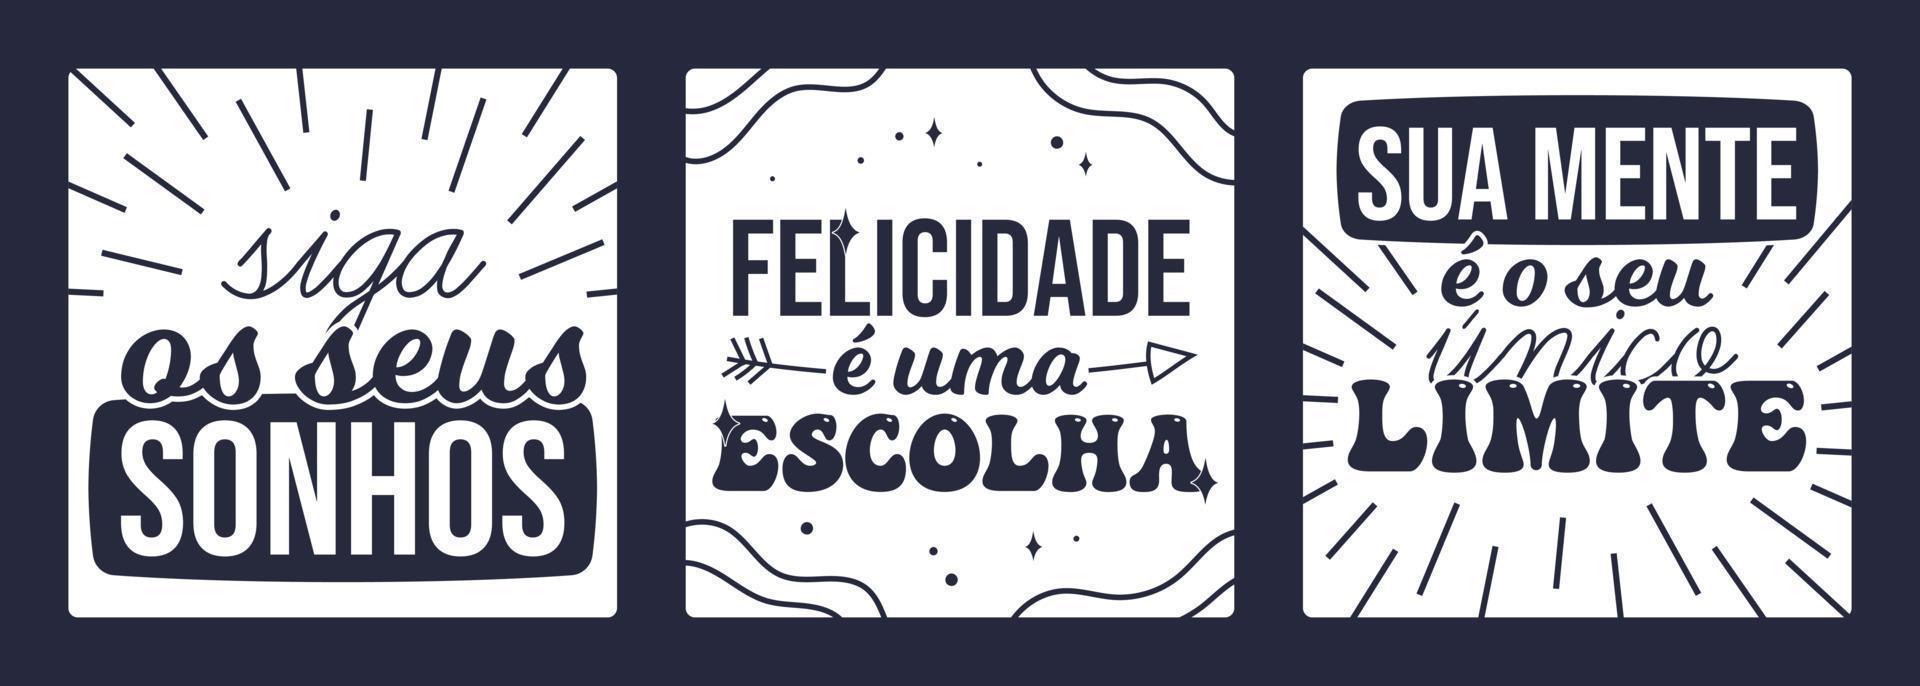 drei brasilianische portugiesische inspirierende Poster. übersetzung - folge deinen träumen - glück ist eine entscheidung - dein verstand ist deine grenze. vektor